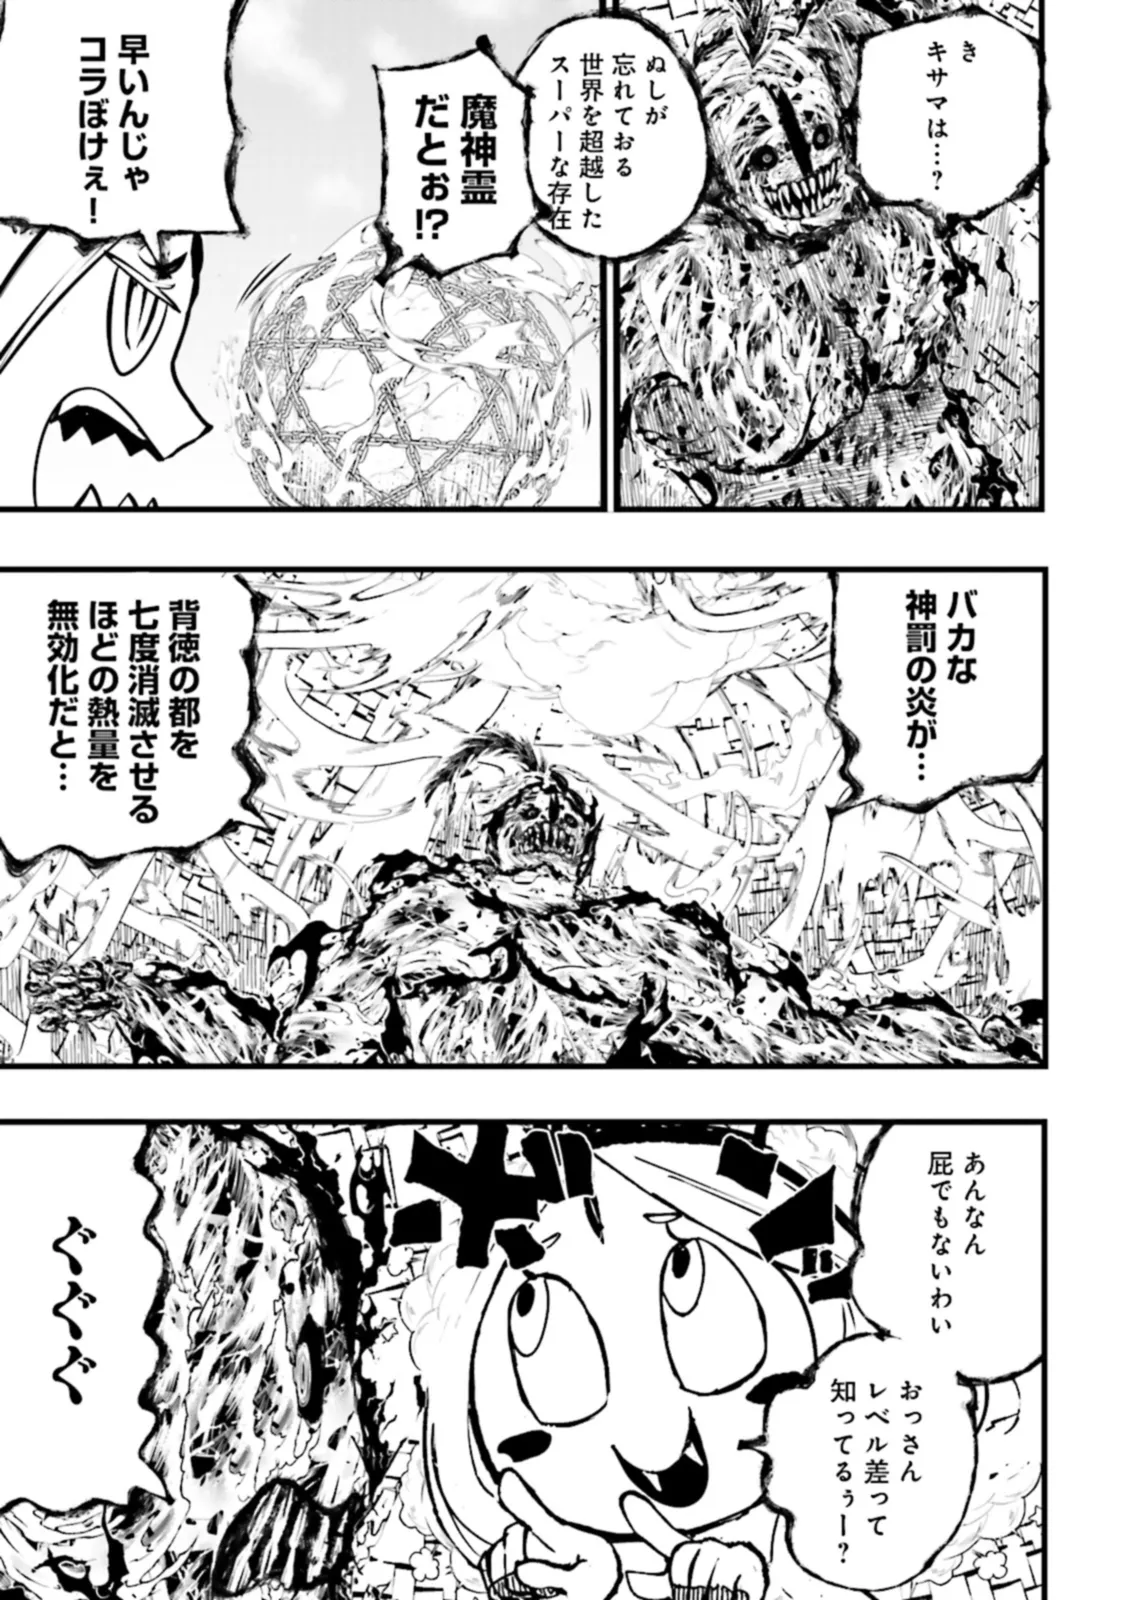 Sukiru Ga Nakereba Level wo Ageru ~ 99 Ga Kansuto No Sekai De Reberu 800 Man Kara Sutato ~ - Chapter 36.3 - Page 5